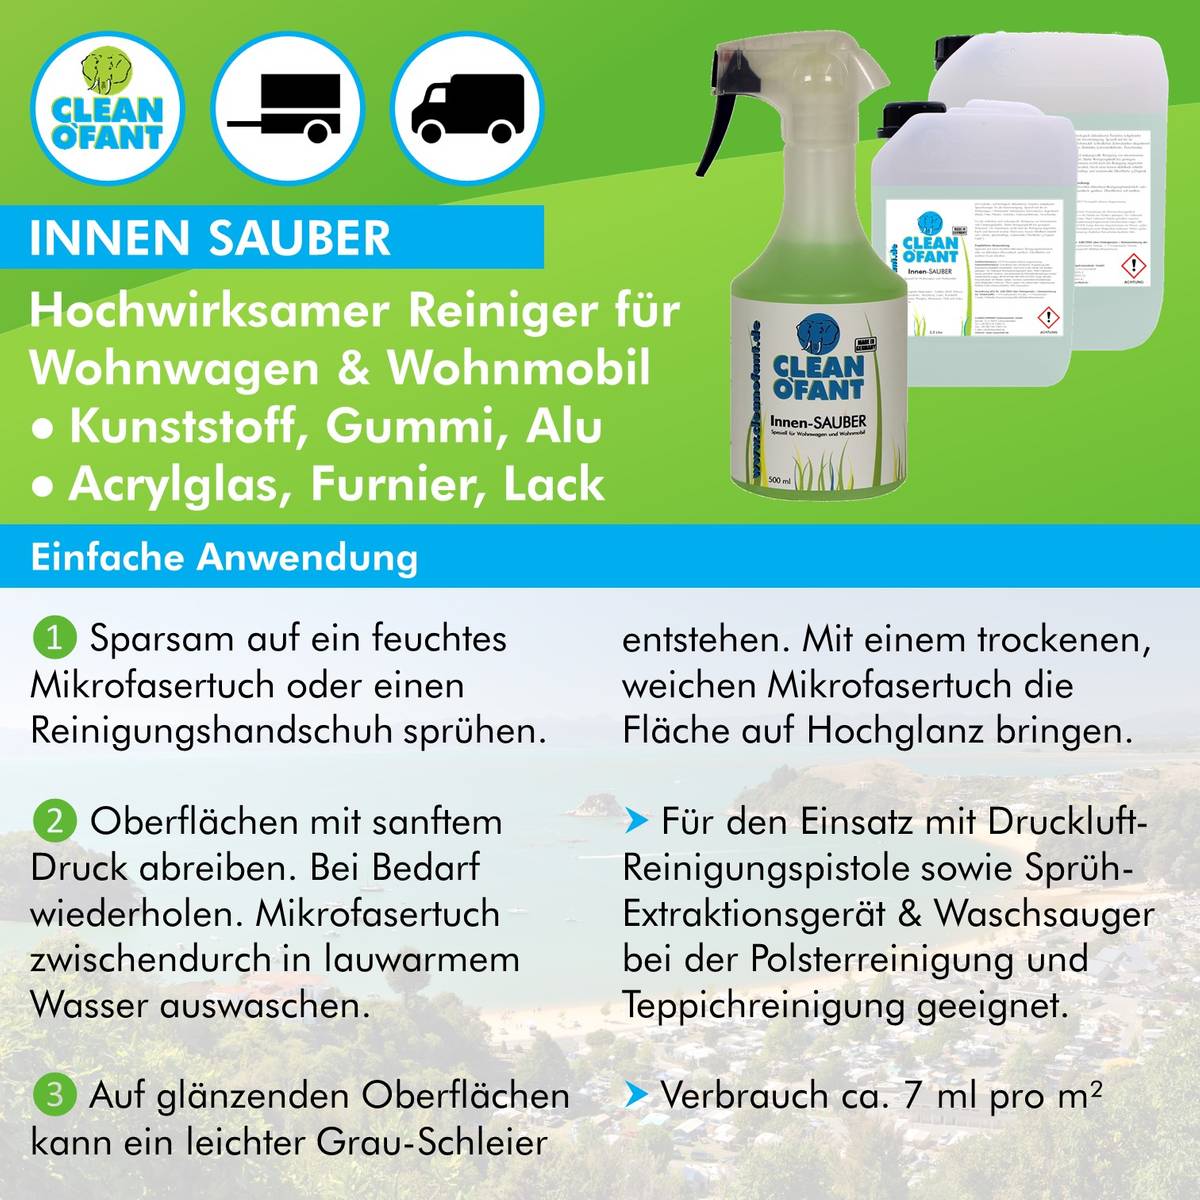 CLEANOFANT Innen-SAUBER (Innenreiniger) - 500 ml